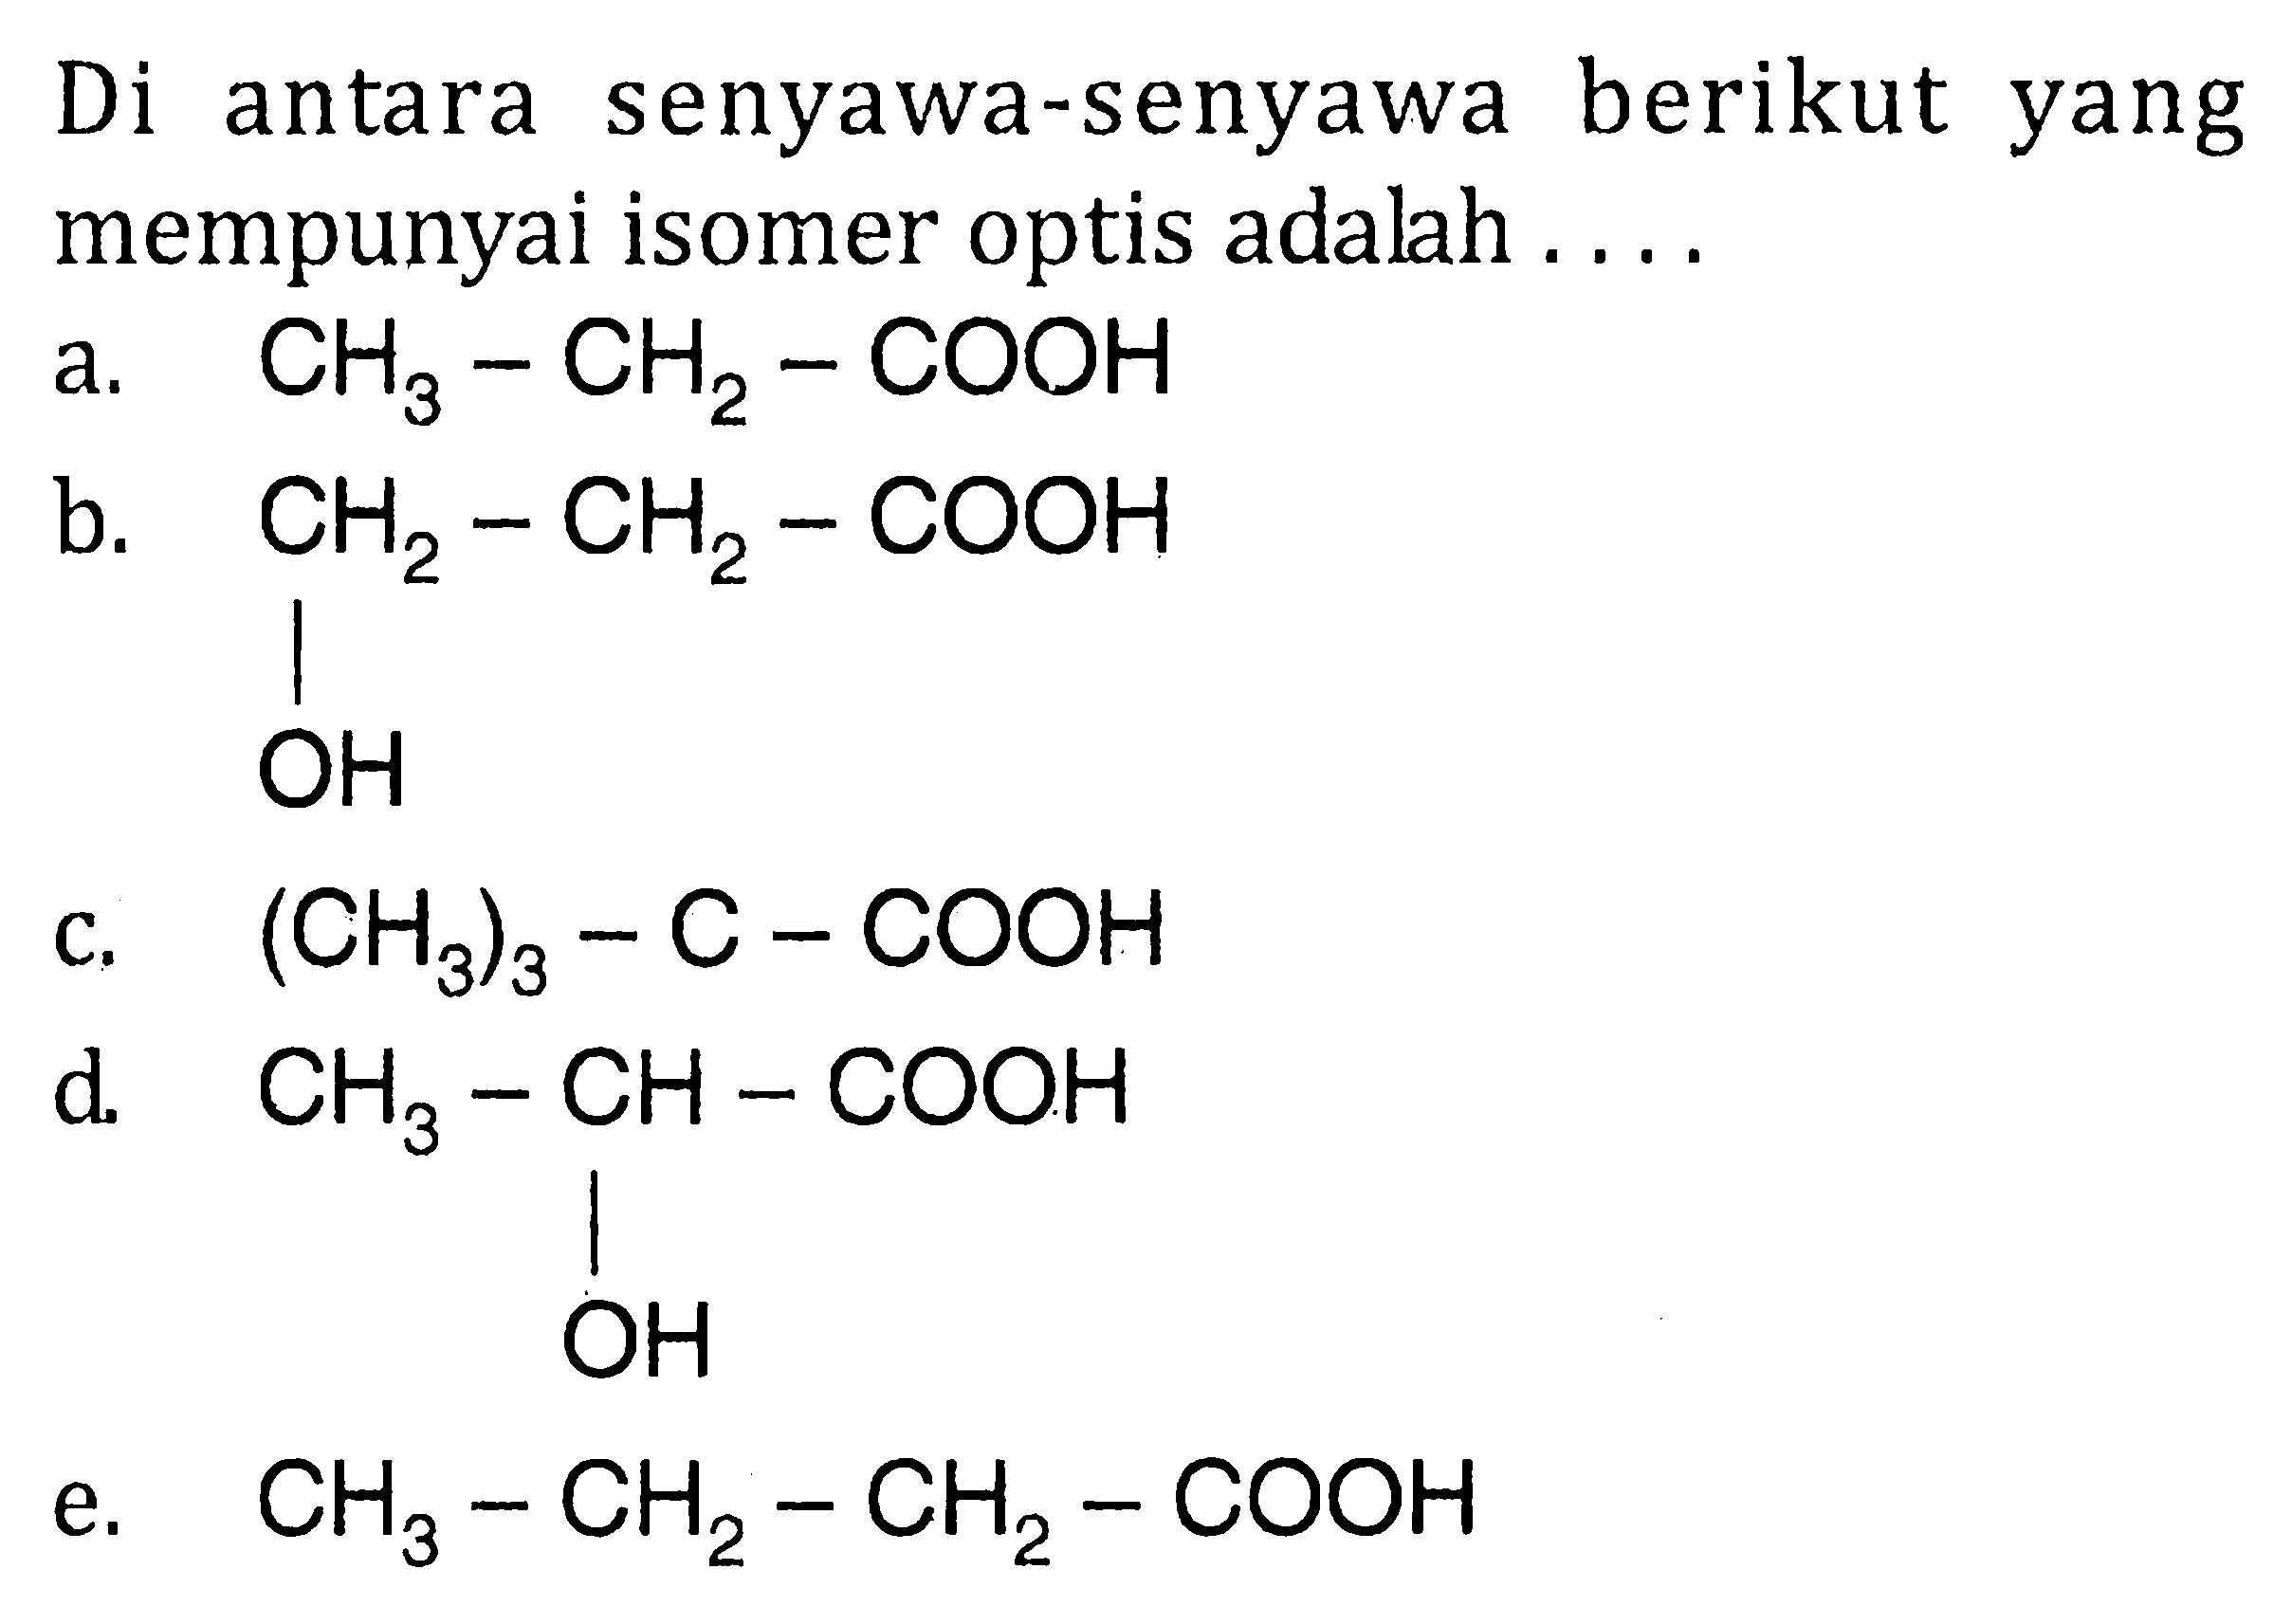 Di berikut antara senyawa-senyawa yang mempunyai isomer optis adalah a. CH3-CH2-COOH b. CH2-CH2-COOH OH c. (CH3)3-C-COOH d. CH3-CH-COOH OH e. CH3-CH2-CH2-COOH